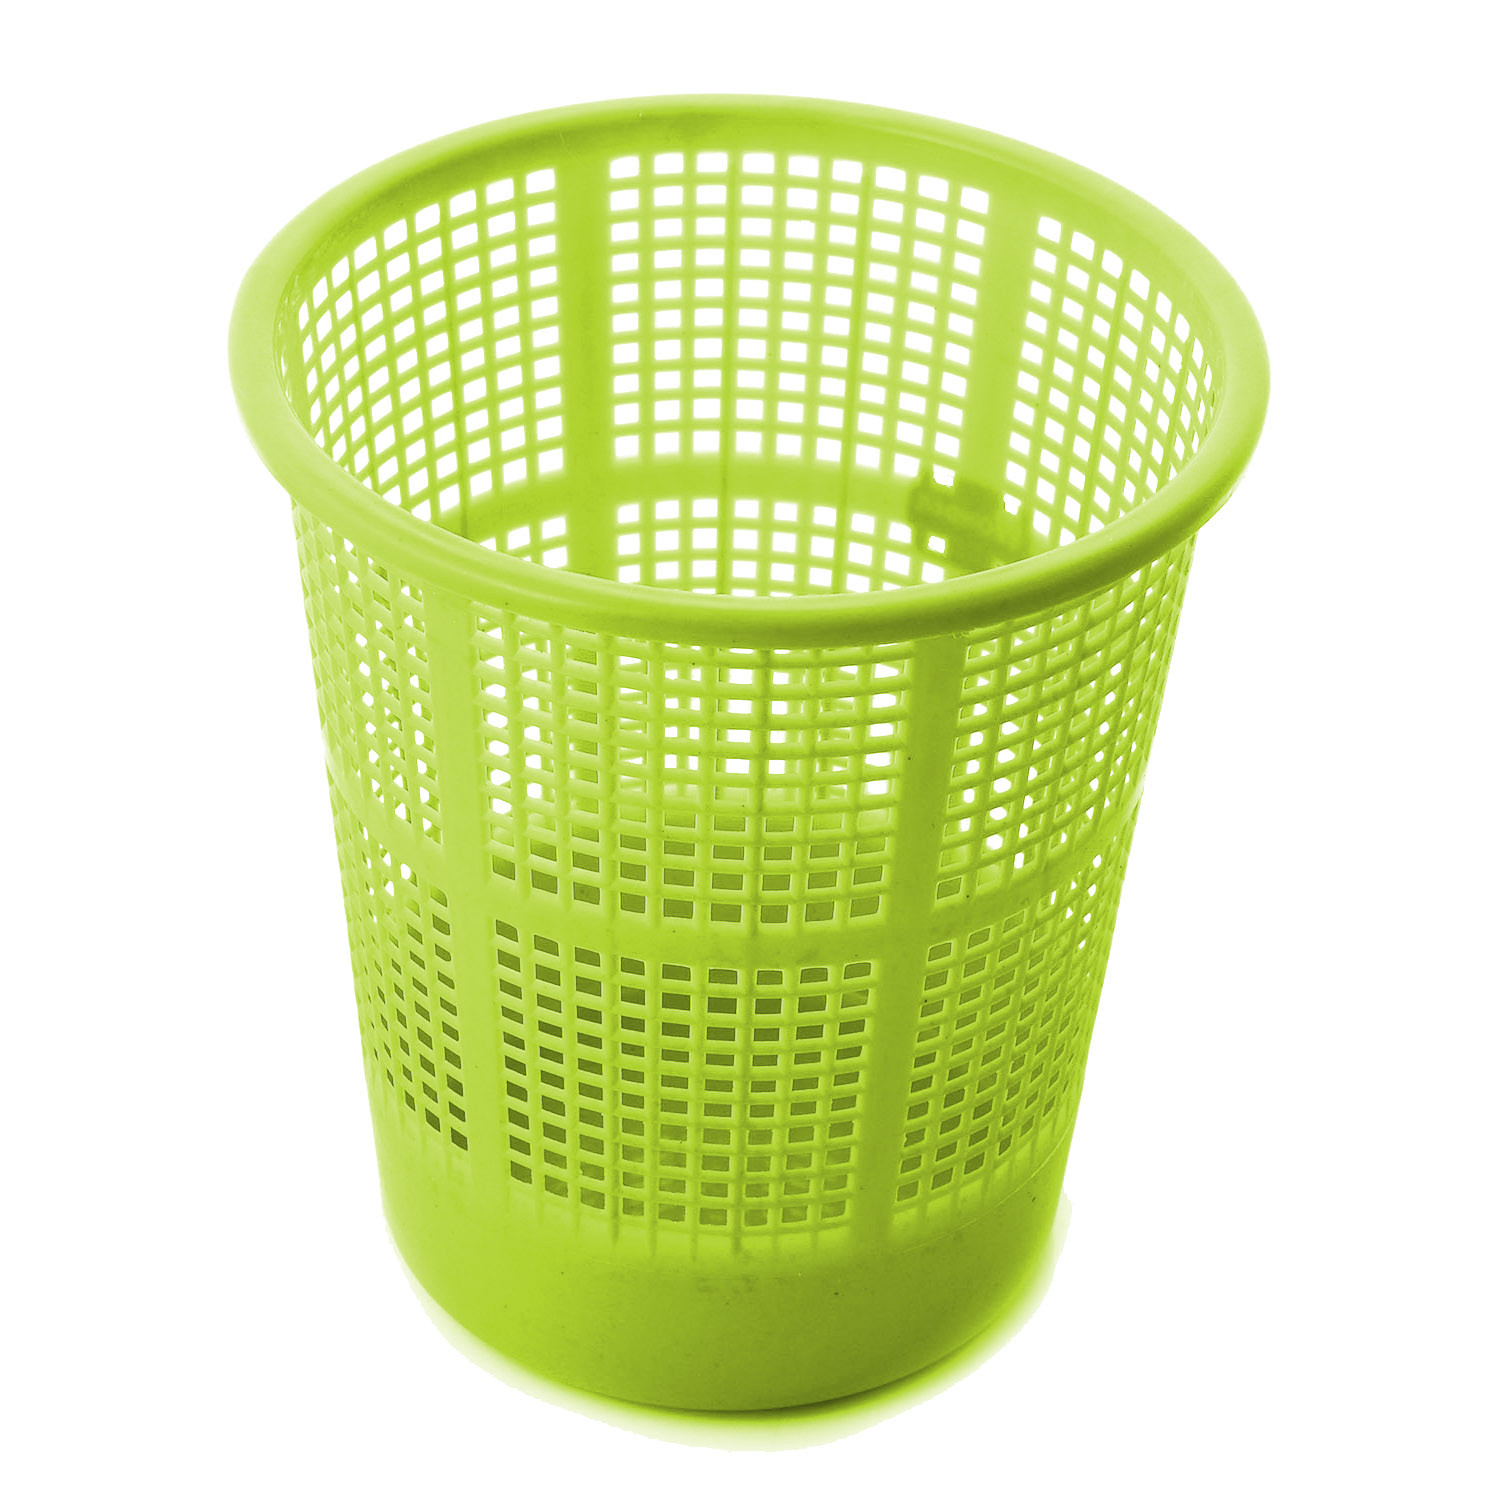 Kuber Industries Plastic Mesh Dustbin Garbage Bin for Office use, School, Bedroom,Kids Room, Home, Multi Purpose,5 Liters (Green & Red & Pink)-KUBMART290